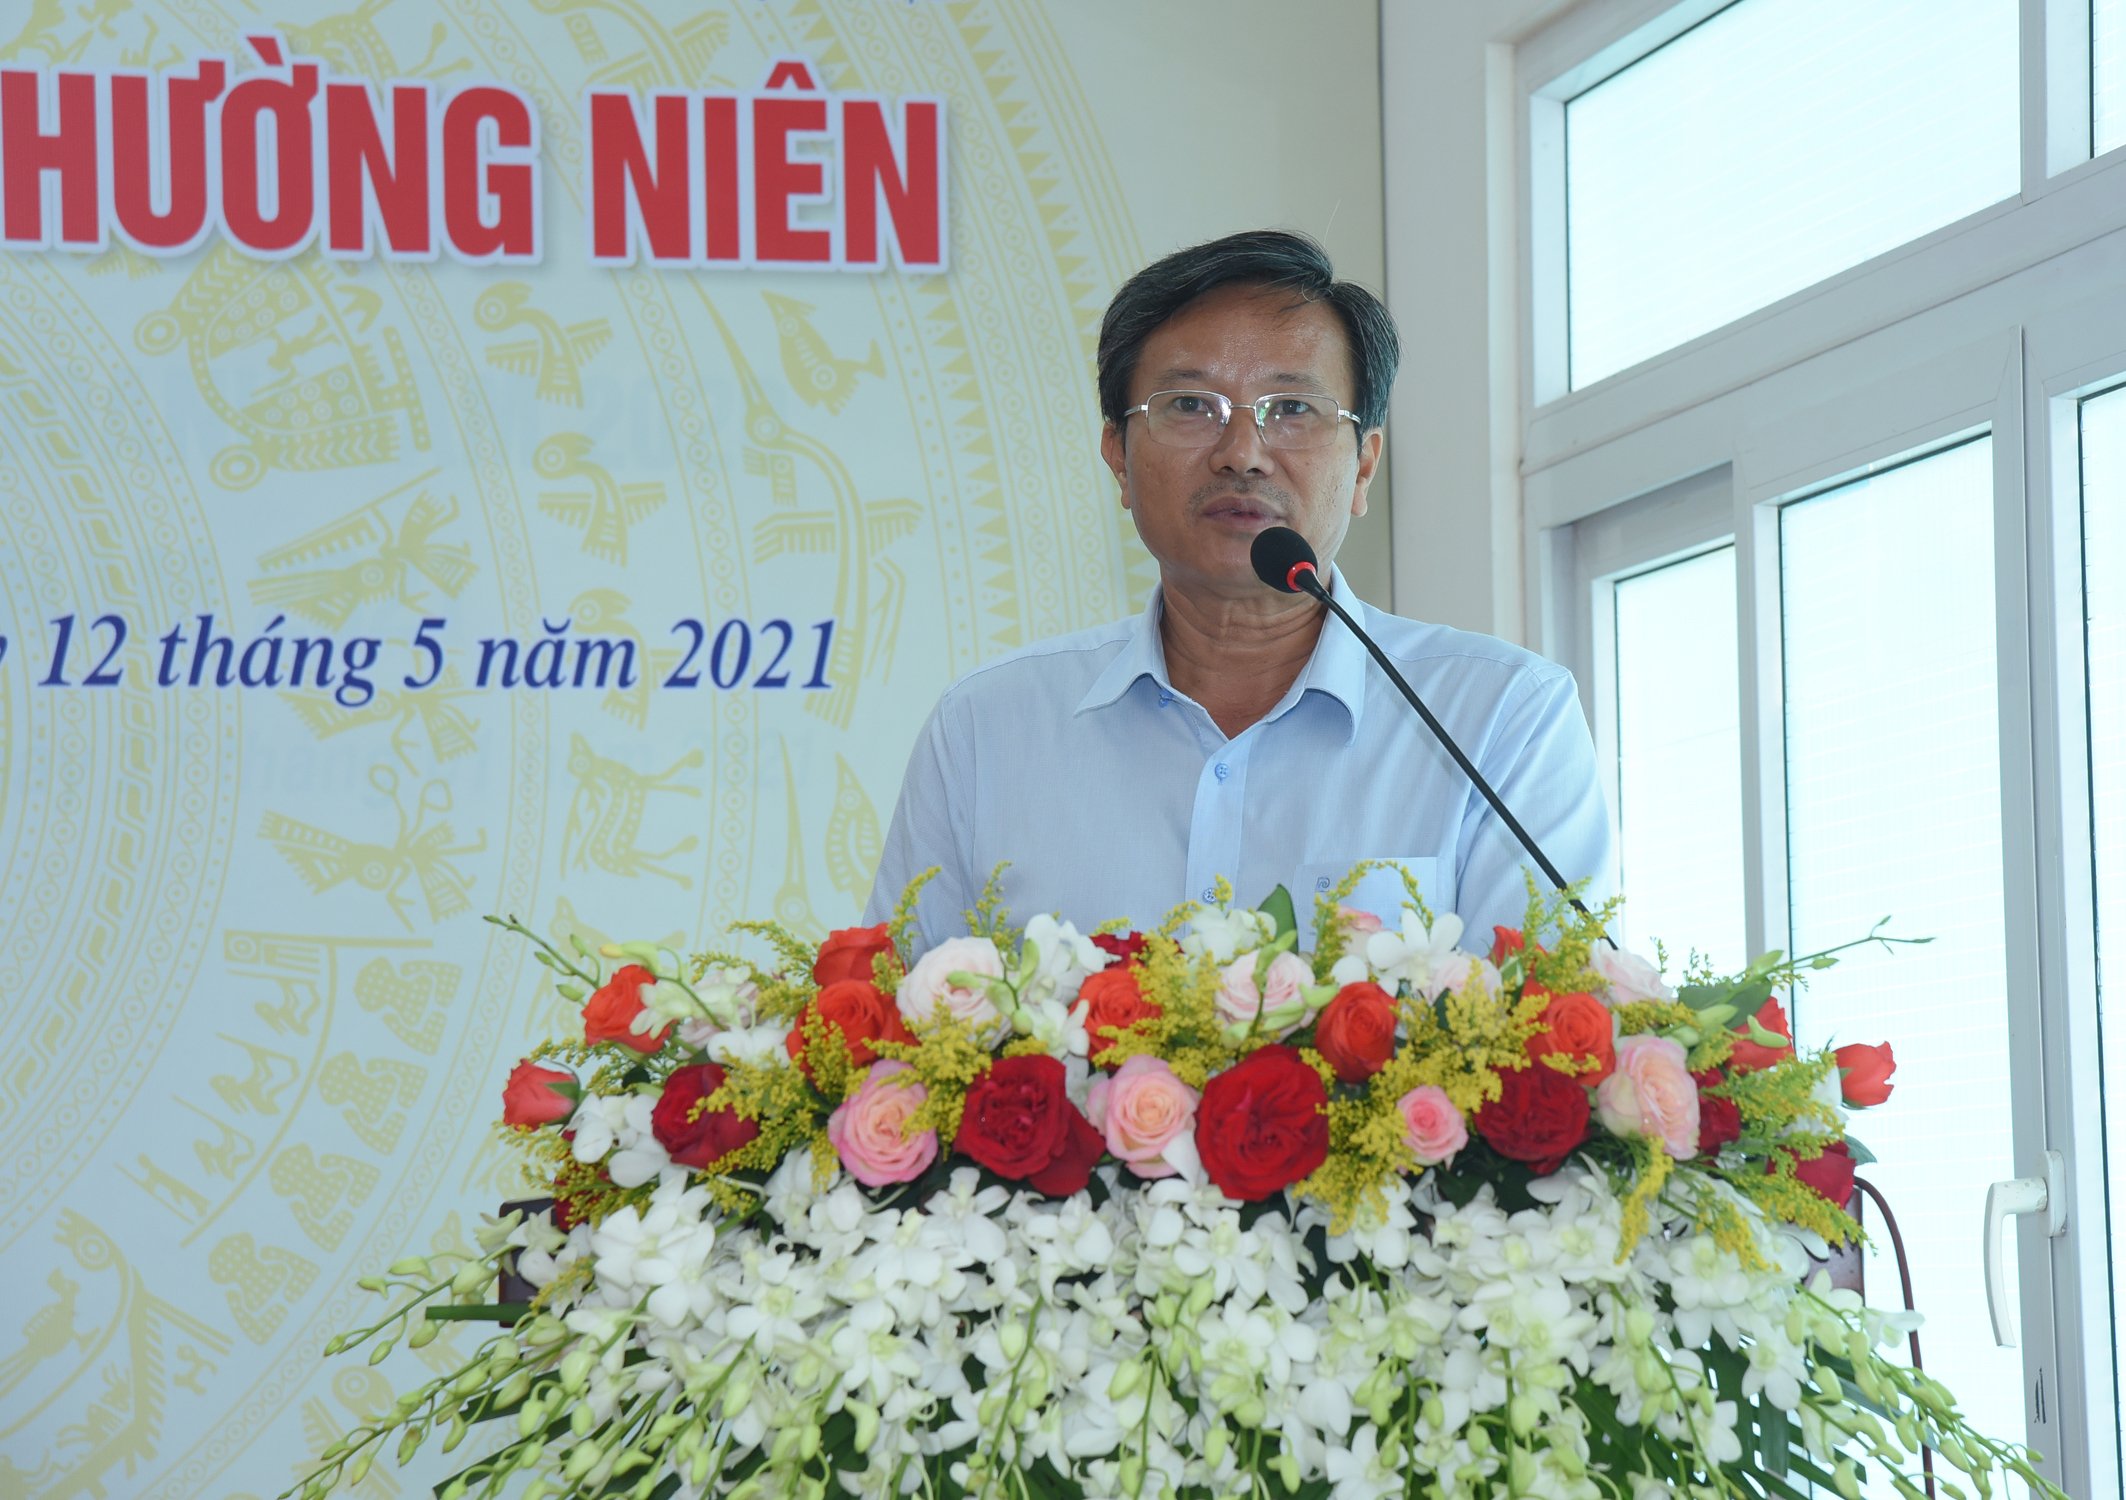 Ông Lê Văn Vui – Chủ tịch HĐQT biểu quyết thông qua Chương trình và Quy chế làm việc của Đại hội. Đồng thời báo cáo hoạt động của HĐQT năm 2020, phương hướng nhiệm vụ năm 2021